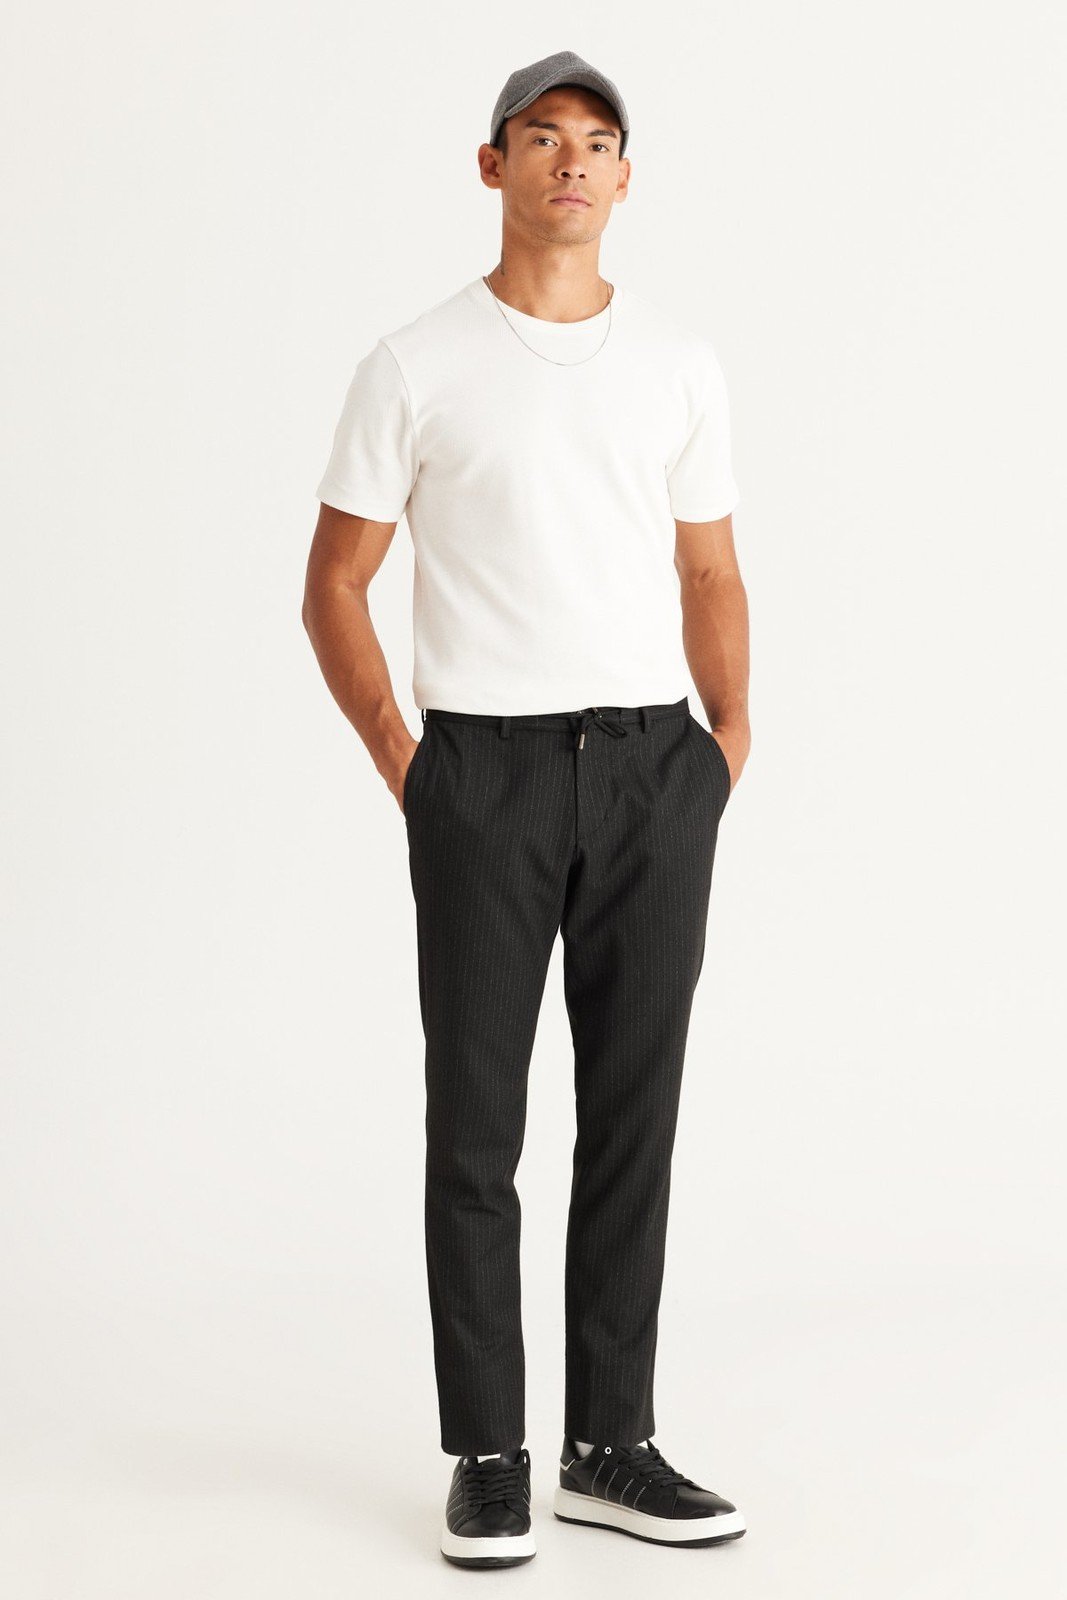 ALTINYILDIZ CLASSICS Men's Anthracite Slim Fit Narrow Cut Tie Waist Patterned Flexible Trousers